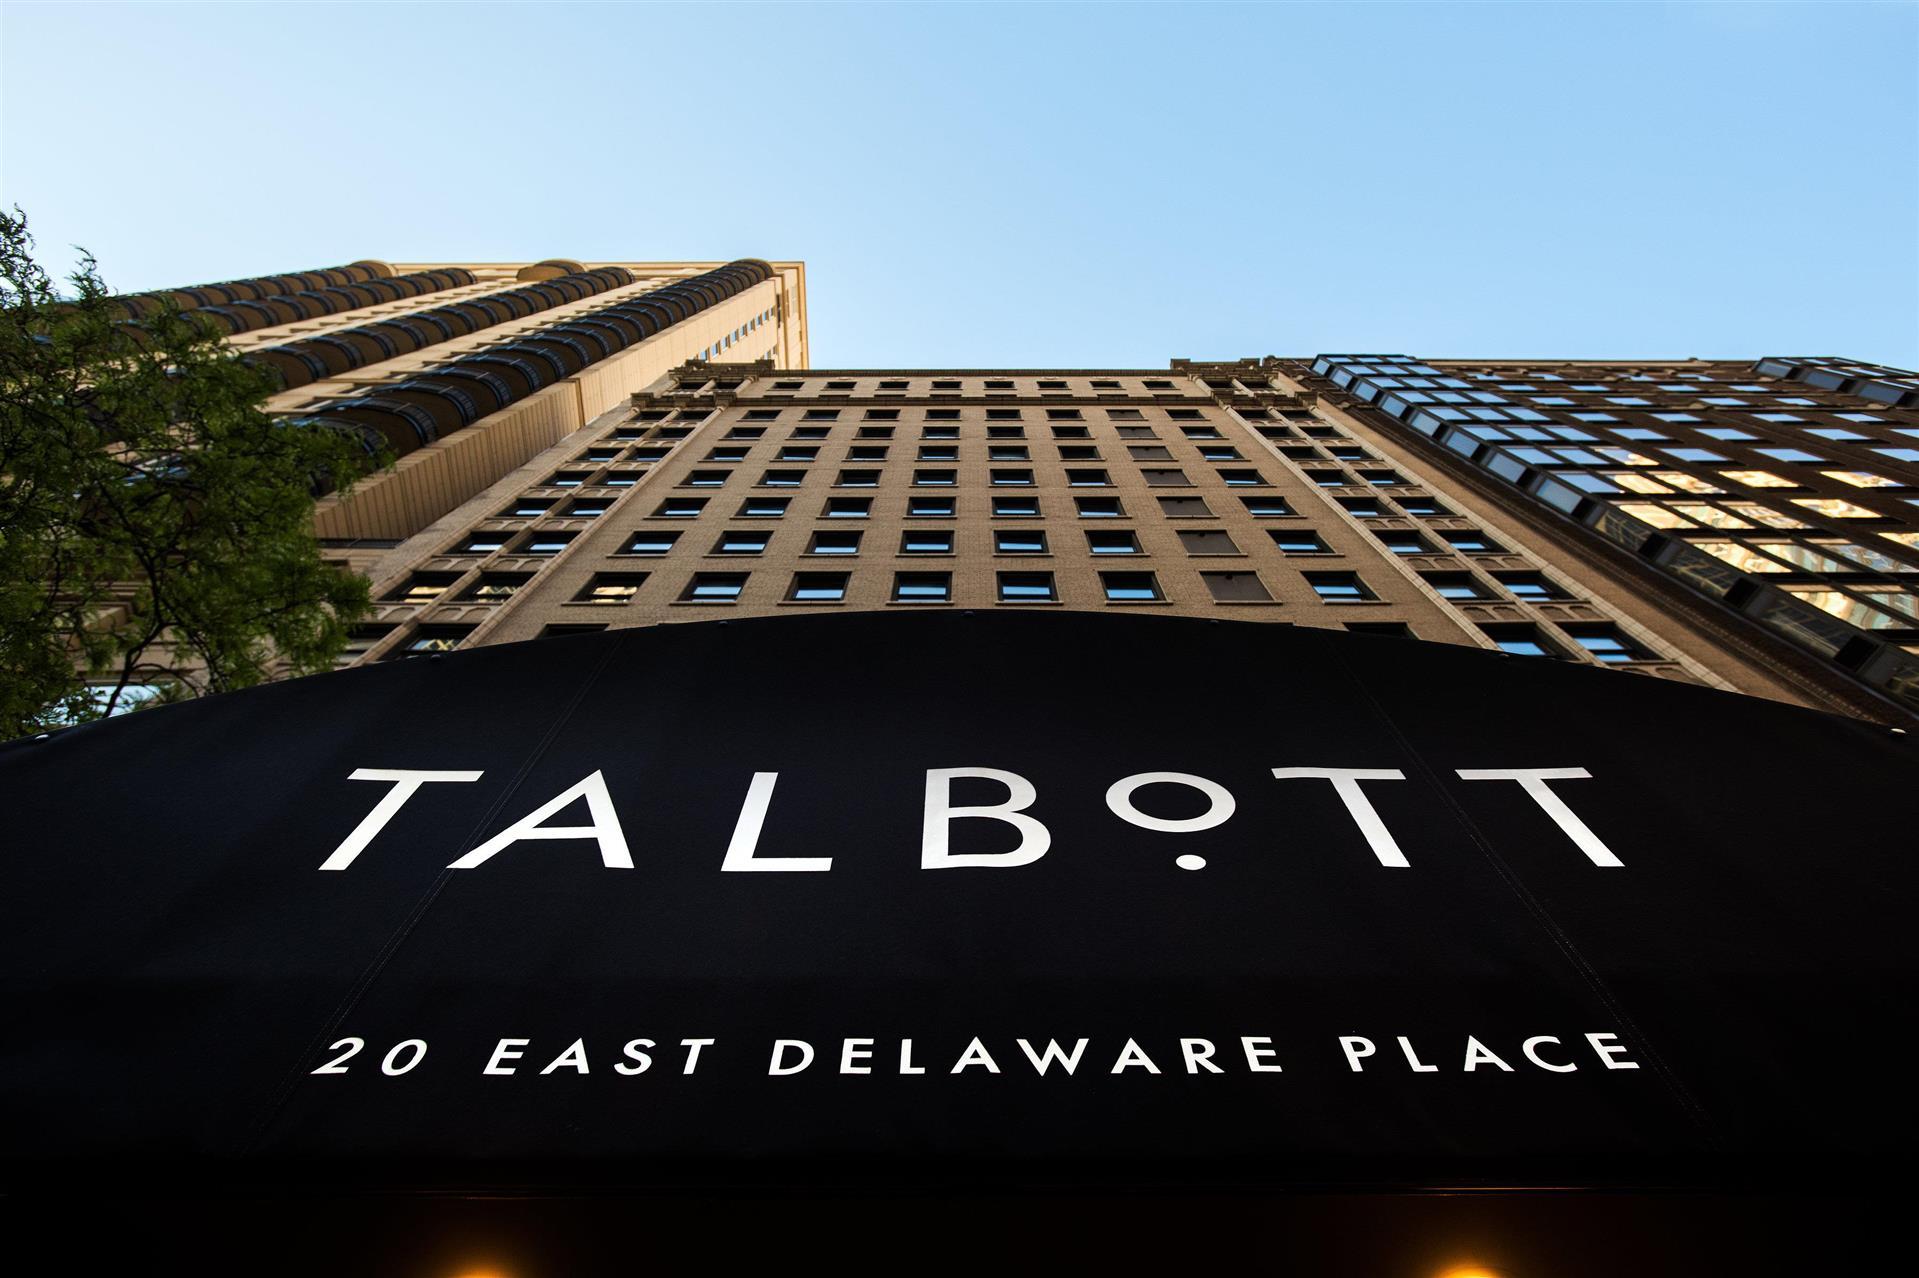 The Talbott Hotel in Chicago, IL